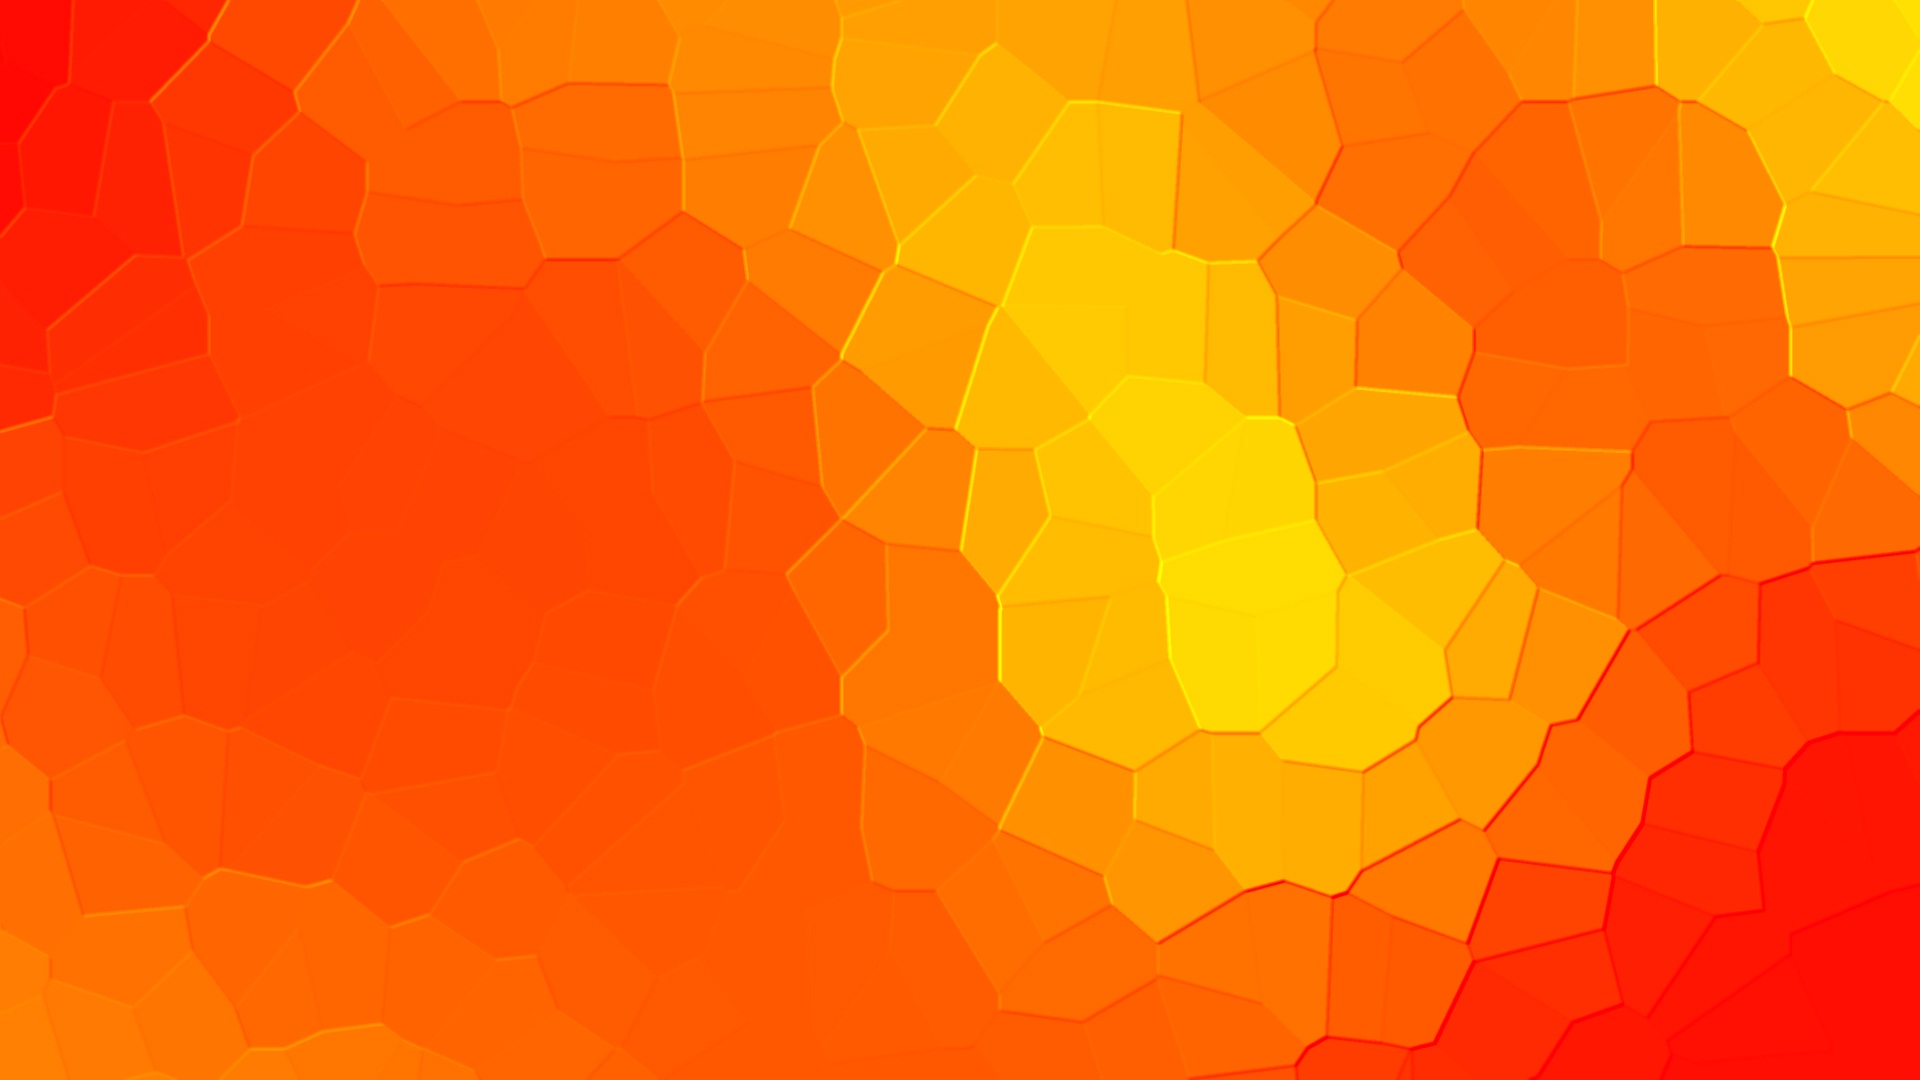 Pixelated orange yellow background free image